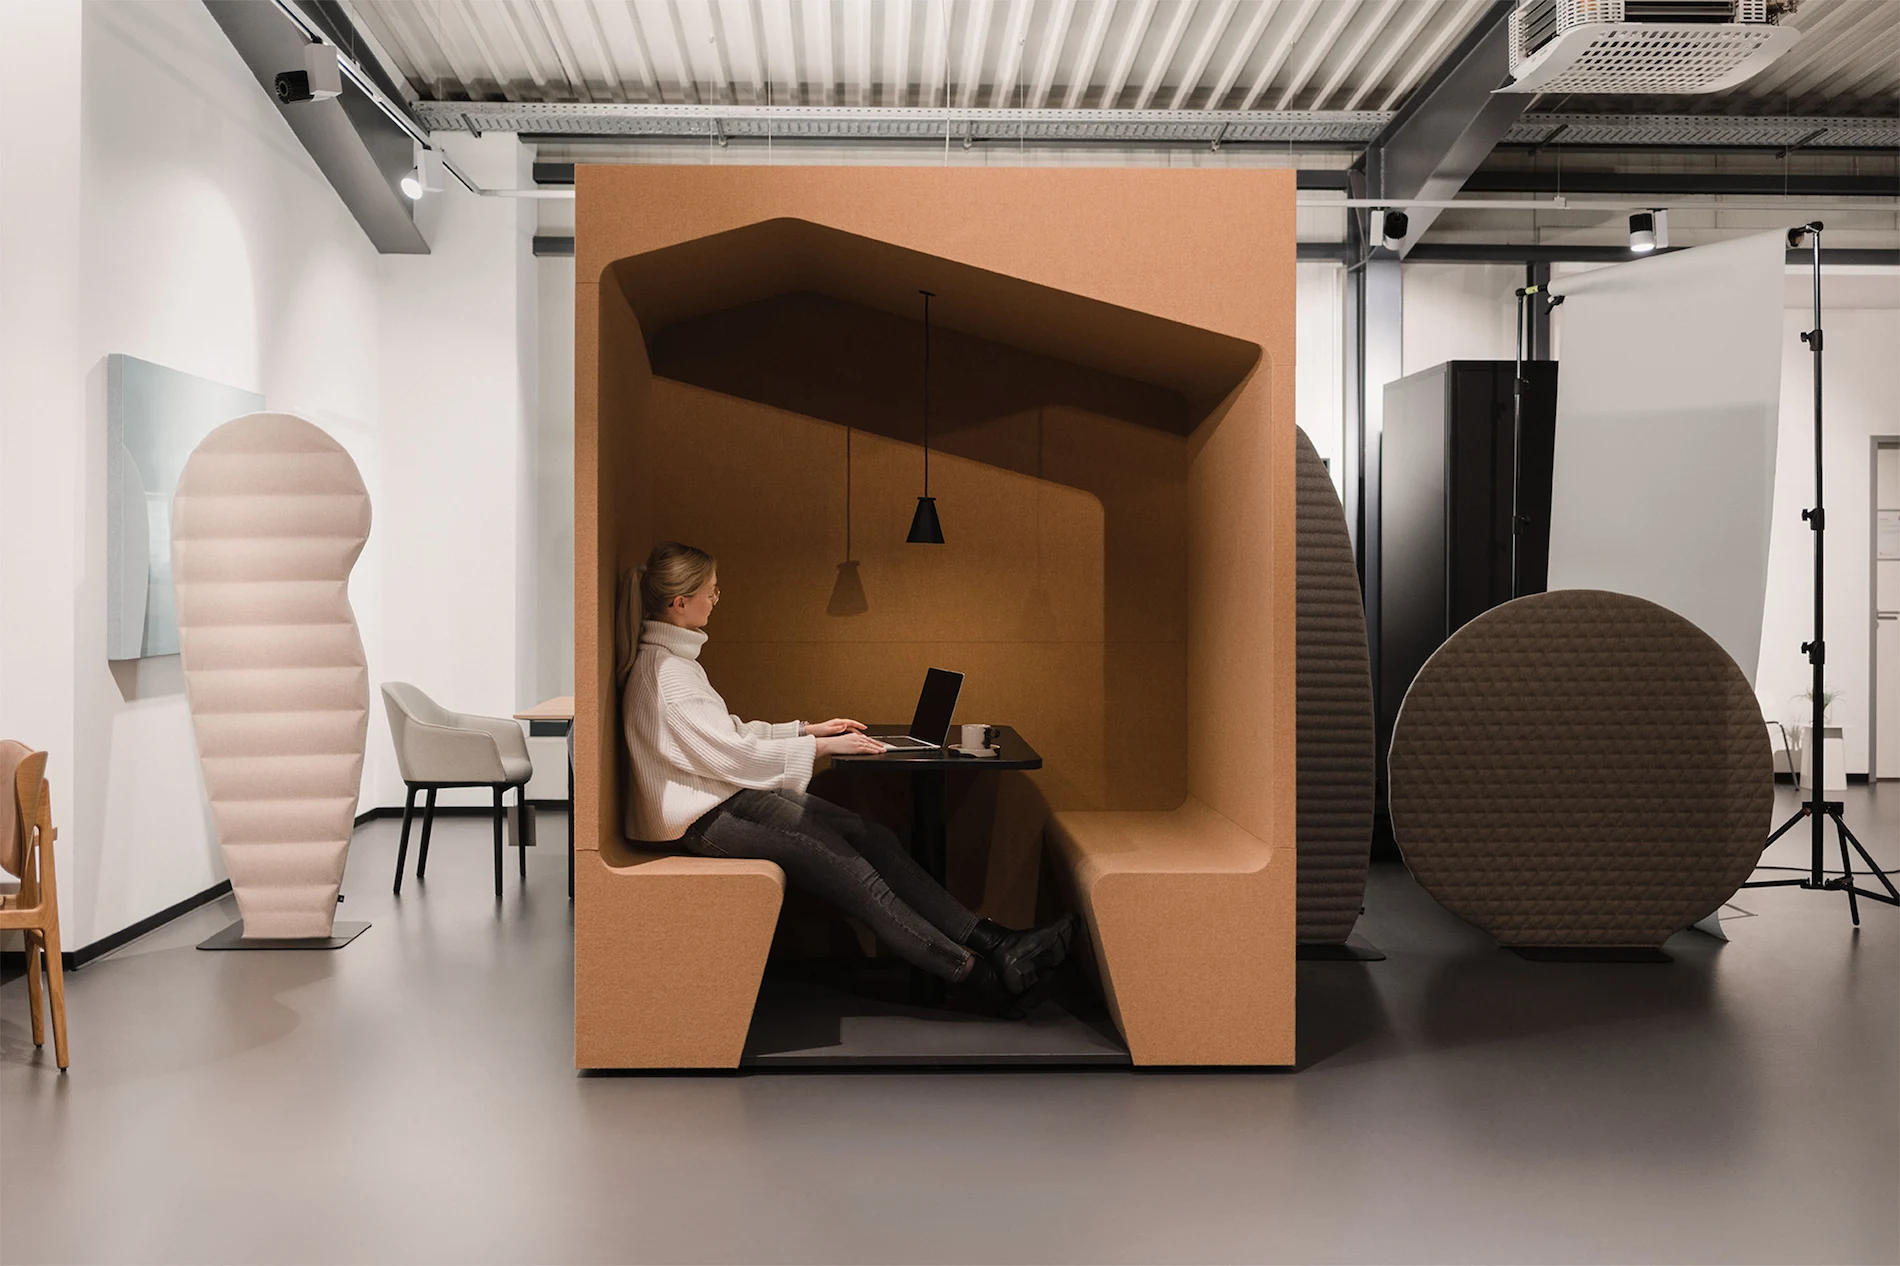 Minimalistisches Bürokonzept in Erdtönen mit eingegrenzter Sitzlounge und Arbeitsfläche.